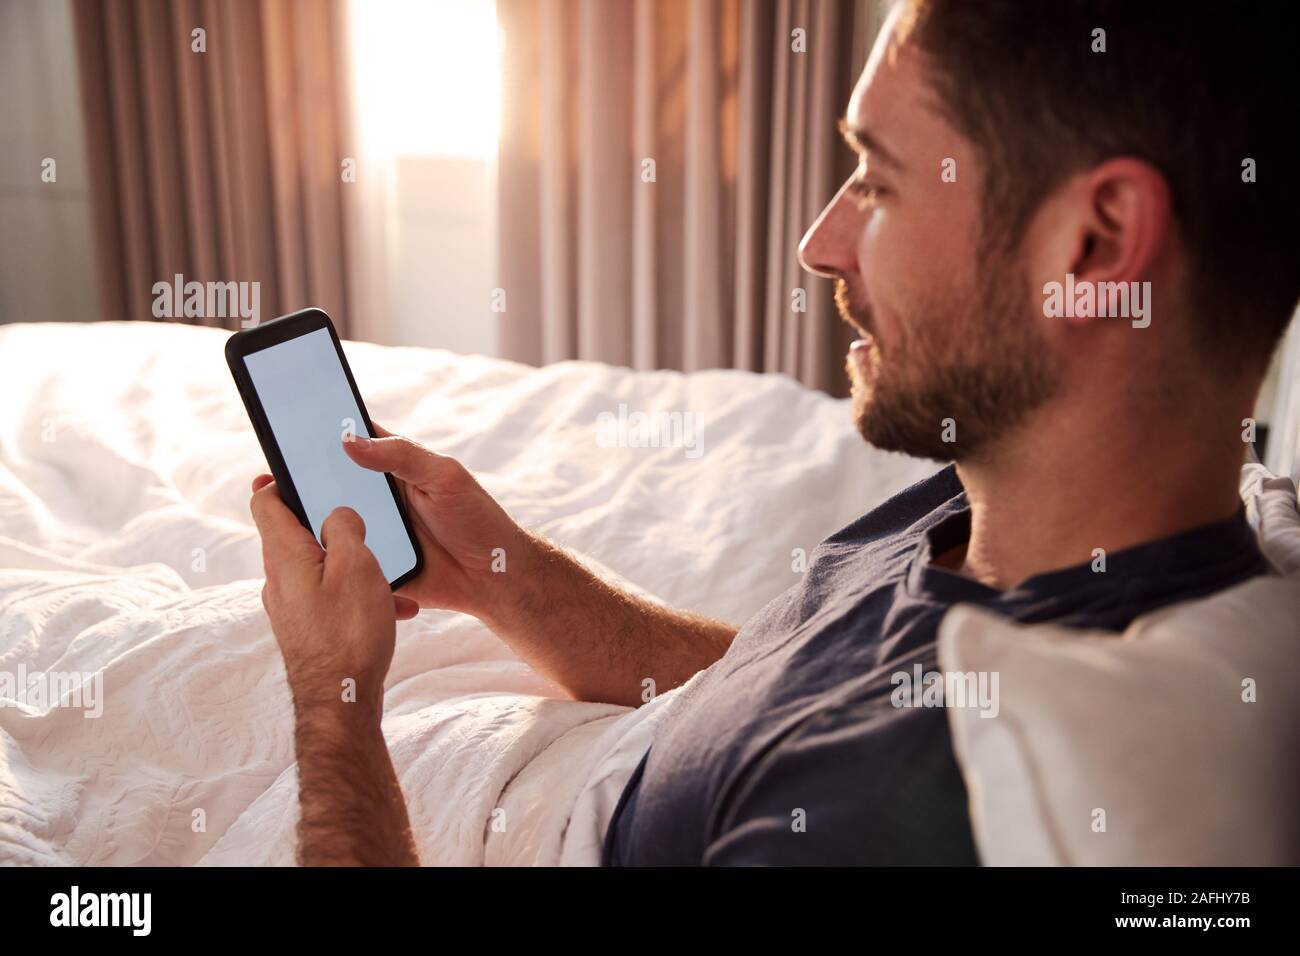 Mann sitzt im Bett am Handy suchen, nachdem sie aufgewacht Stockfoto